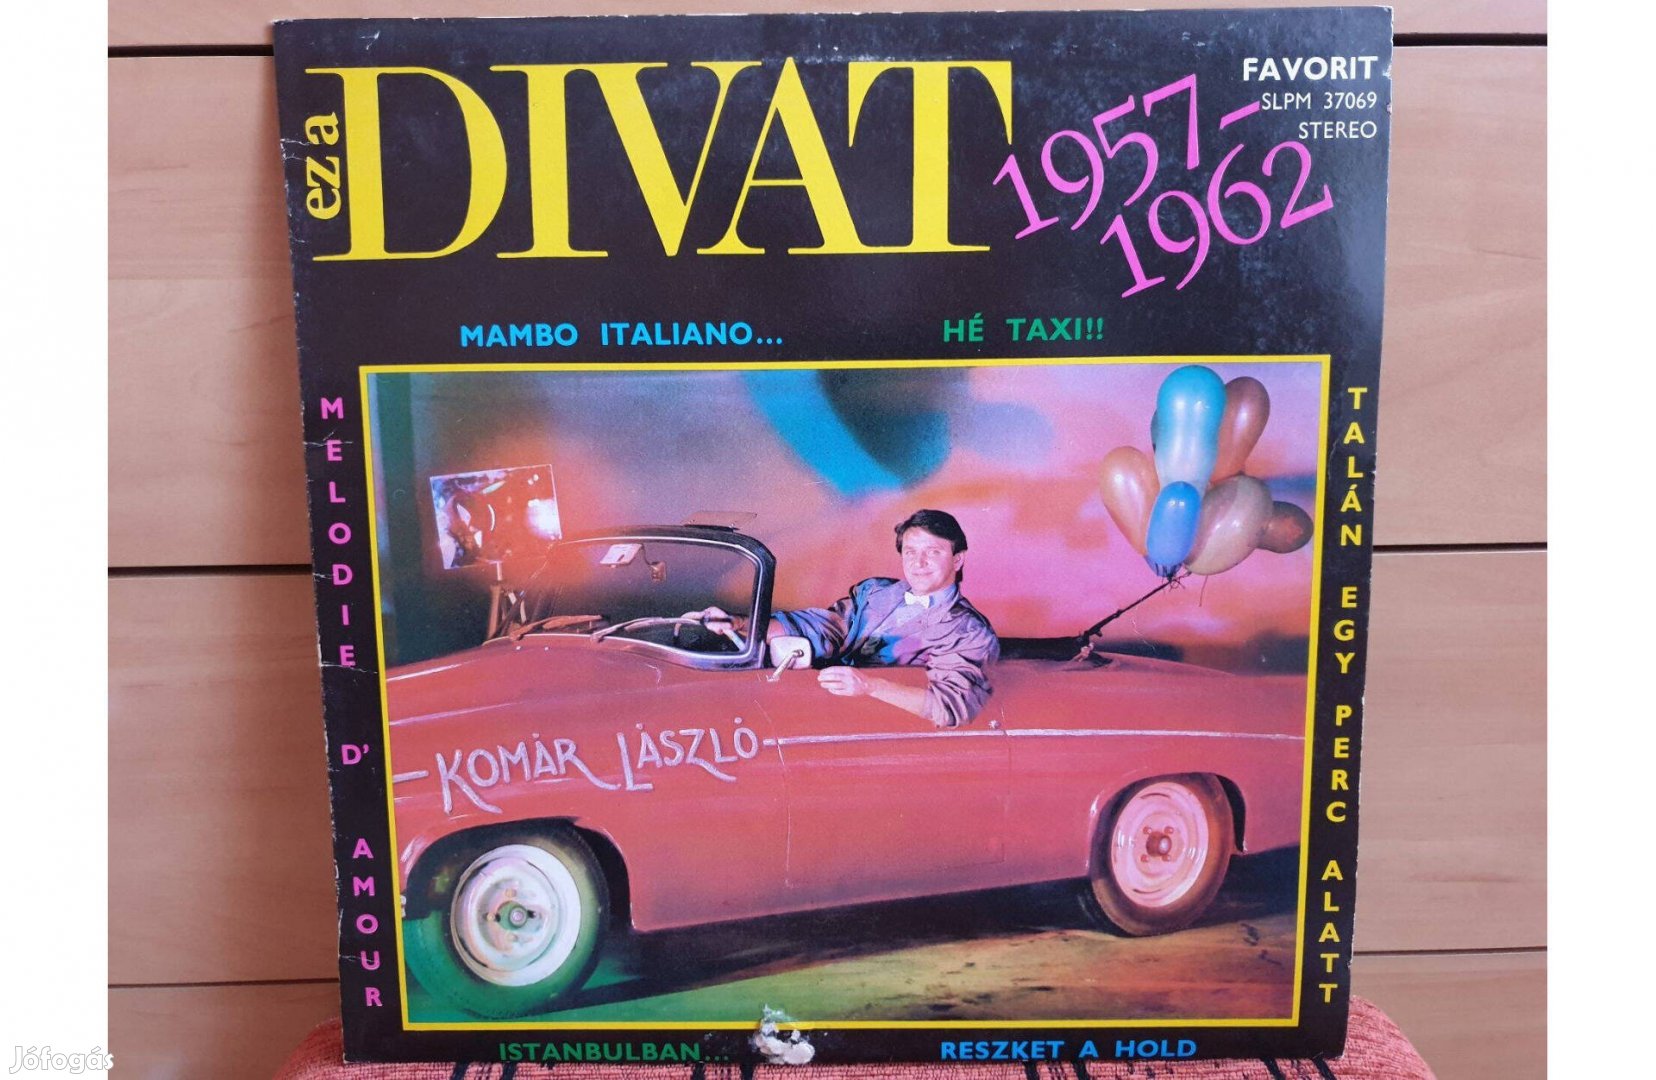 Komár László - Ez a divat 1957-62 hanglemez bakelit lemez Vinyl